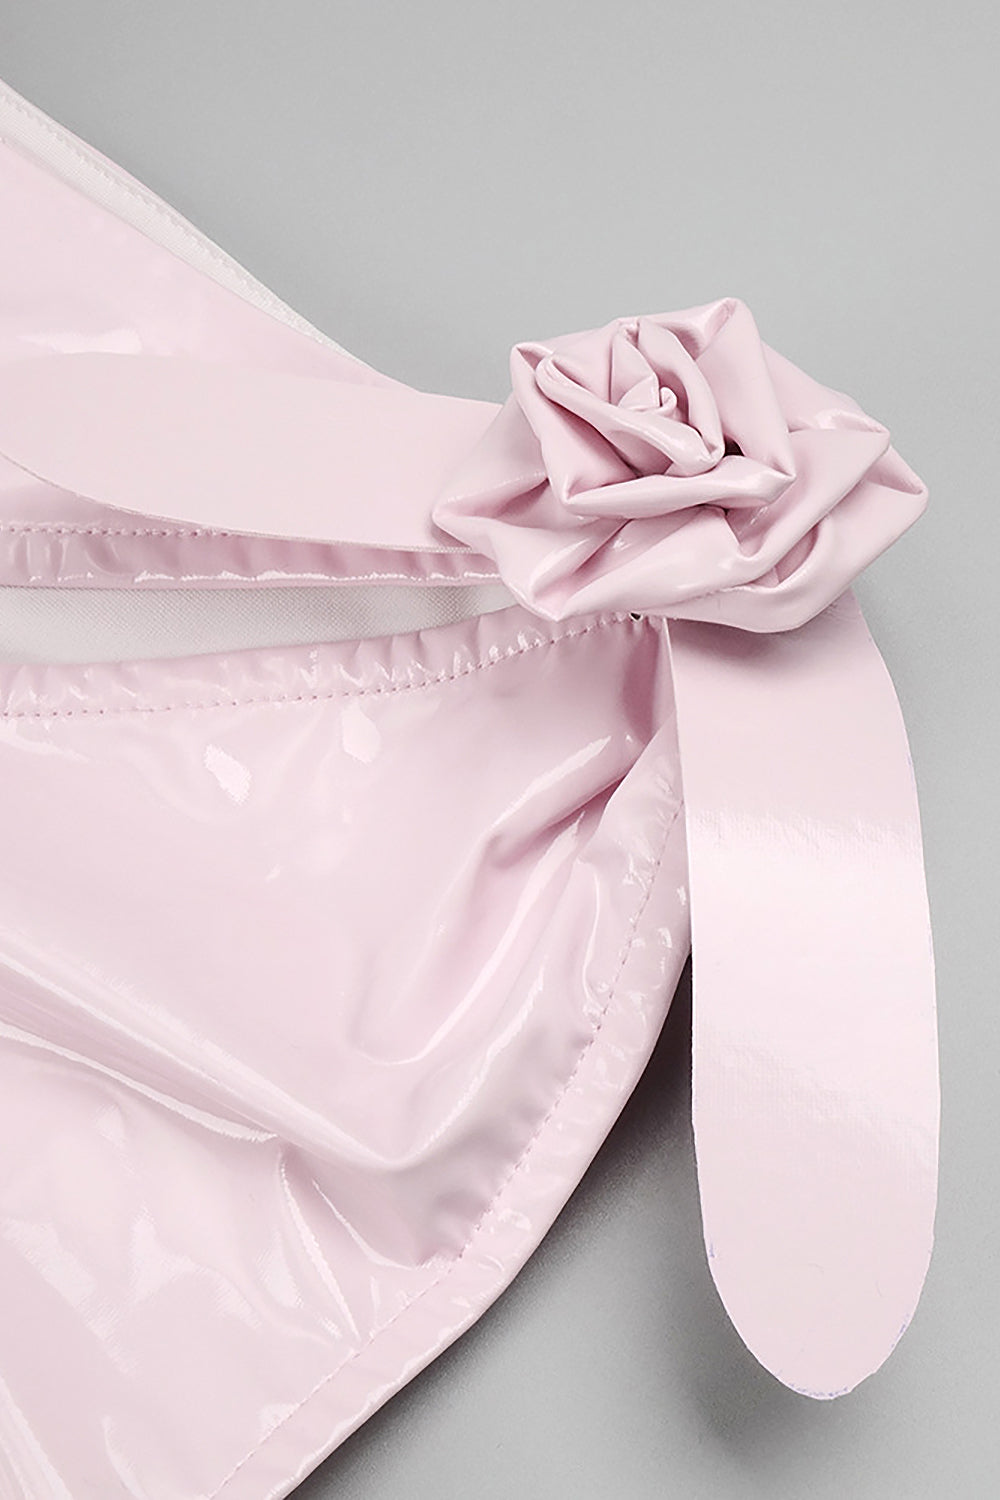 Glam avec une robe moulante en latex énervée en blanc rose